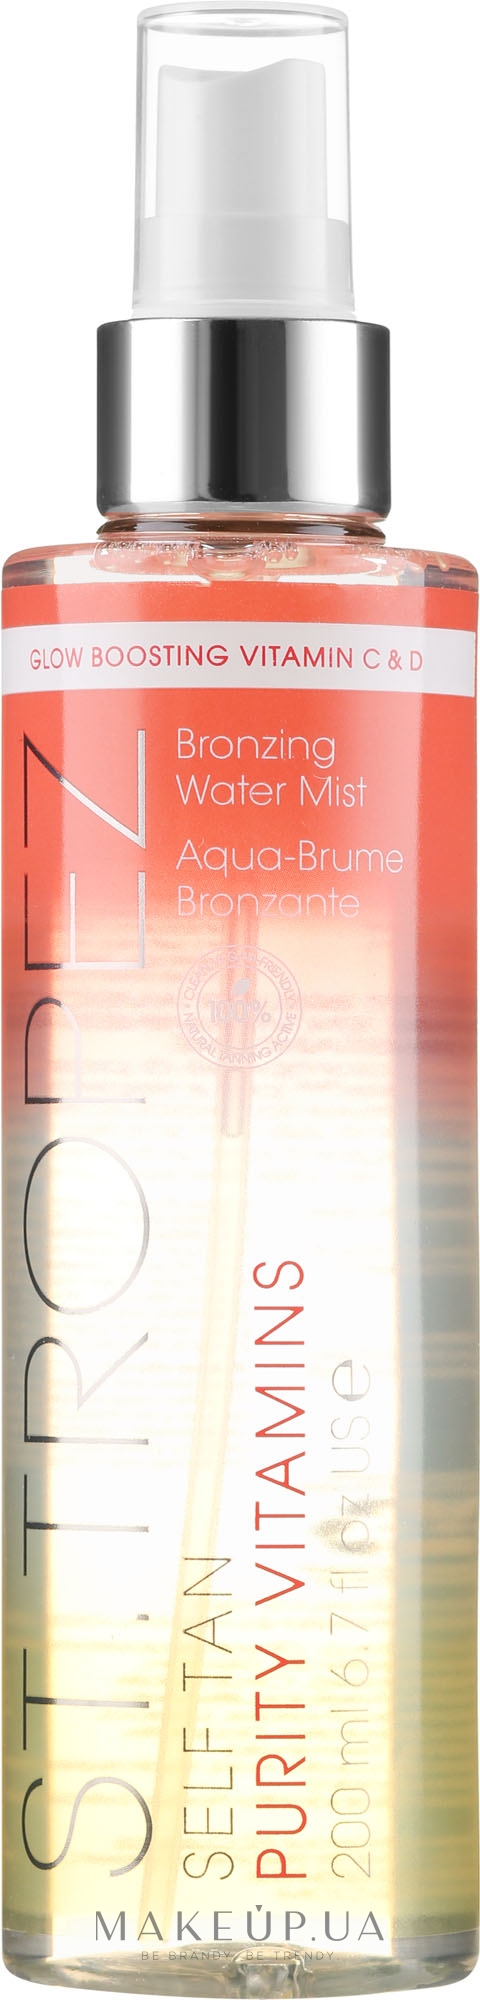 Вітамінний бронзувальний спрей для тіла - St. Tropez Self Tan Purity Vitamins Bronzing Water Body Mist — фото 200ml